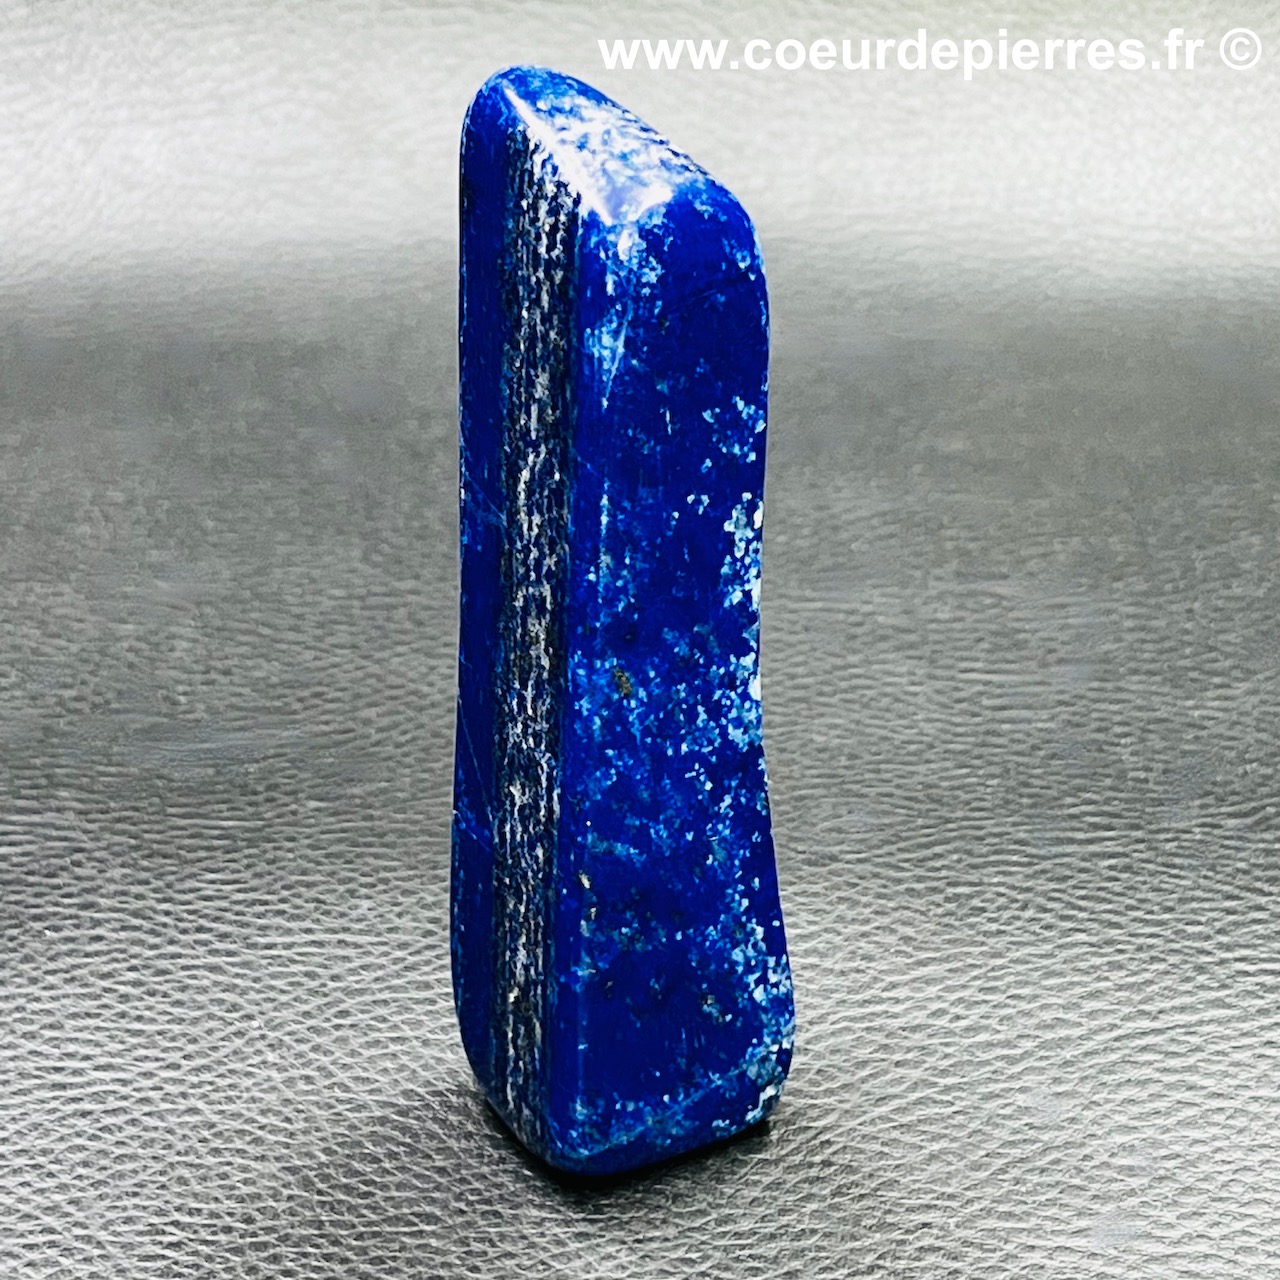 Lapis lazuli d’Afghanistan (réf lpz9)